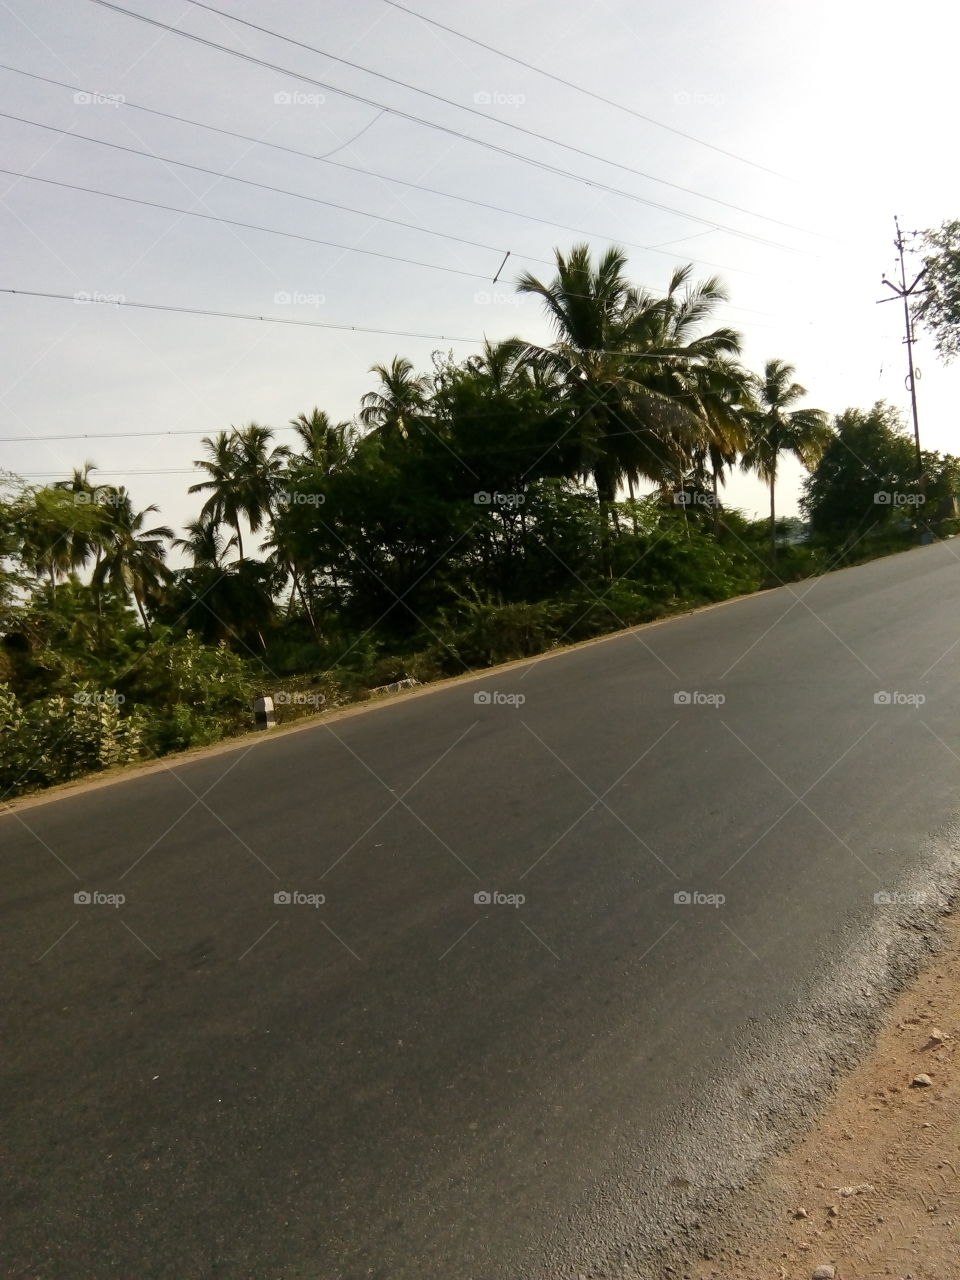 Tamil Nadu road